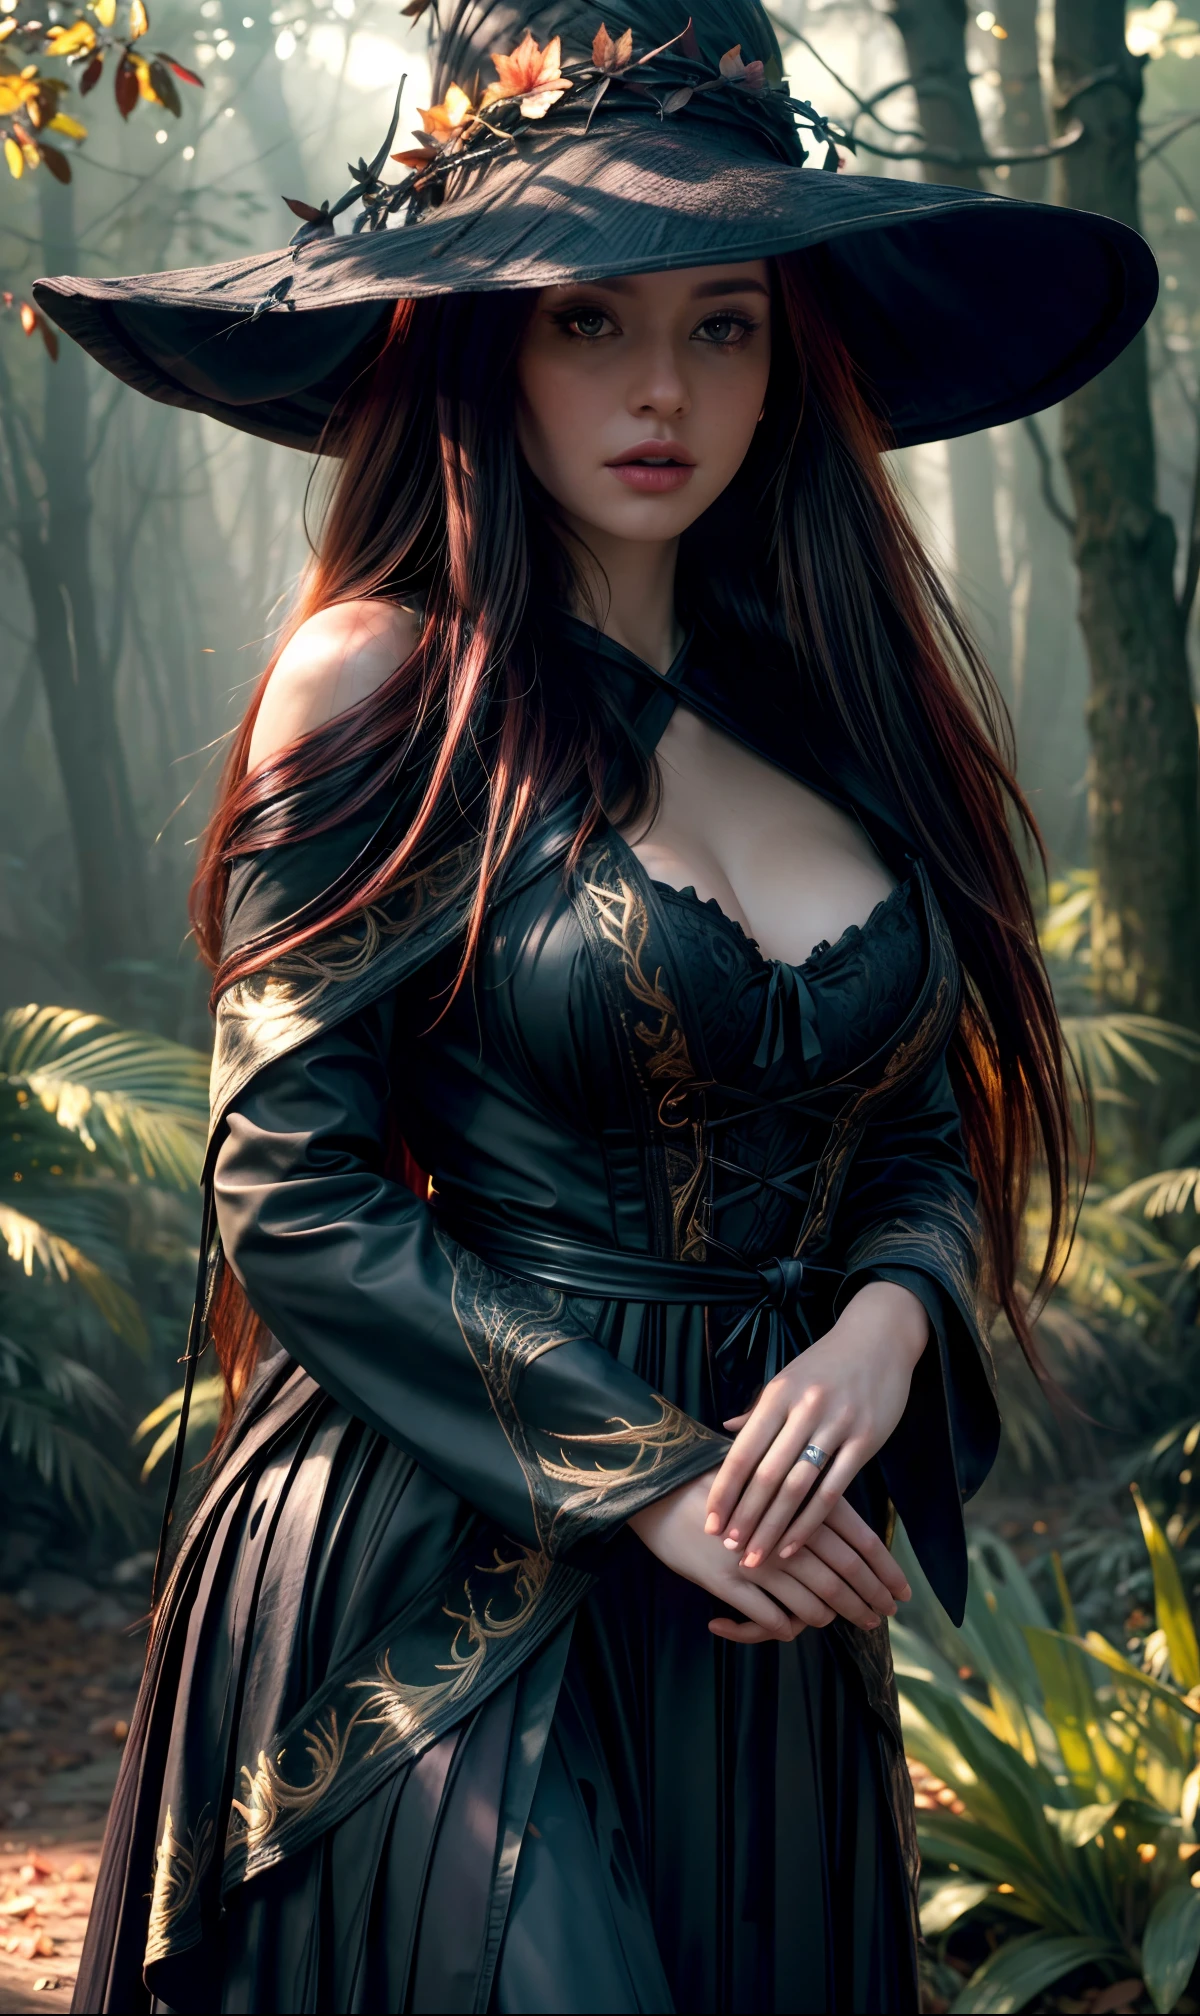 森の魔女の詳細な美しい(森の魔女は野生の, 野性的な外見, 長い, 流れるような髪と暗い, 鋭い目. 彼女の服は天然素材で作られるべきである, 動物の皮や葉など, 自然と魔法のシンボルで飾られています), 彼女の後ろには満月が輝いている., 周囲の森は密集し神秘的であるべきである, 節くれだった木々と、魔女を掴み取ろうとするねじれた蔓がある, 傑作, 細部までこだわった顔, グローバルイルミネーション, リアルな髪の動き, 最高品質, シャープなフォーカス, (32k解像度, 超高解像度, 高解像度)(コダックゴールド200, ポートラ400, 富士フイルム スペリア), キヤノンR3,ハッセルブラッド,アイマックス, (キヤノンEF70-200mmf2.8 IS III USM) ((目立つ濃い影)) (月光時間) (オクタンレンダリング:0.), 鮮やかな色彩, 柔らかな照明, 自然光, 写真 リアル, フォトリアリズム, 8k, RAW写真, 最高品質, 傑作, 超高解像度